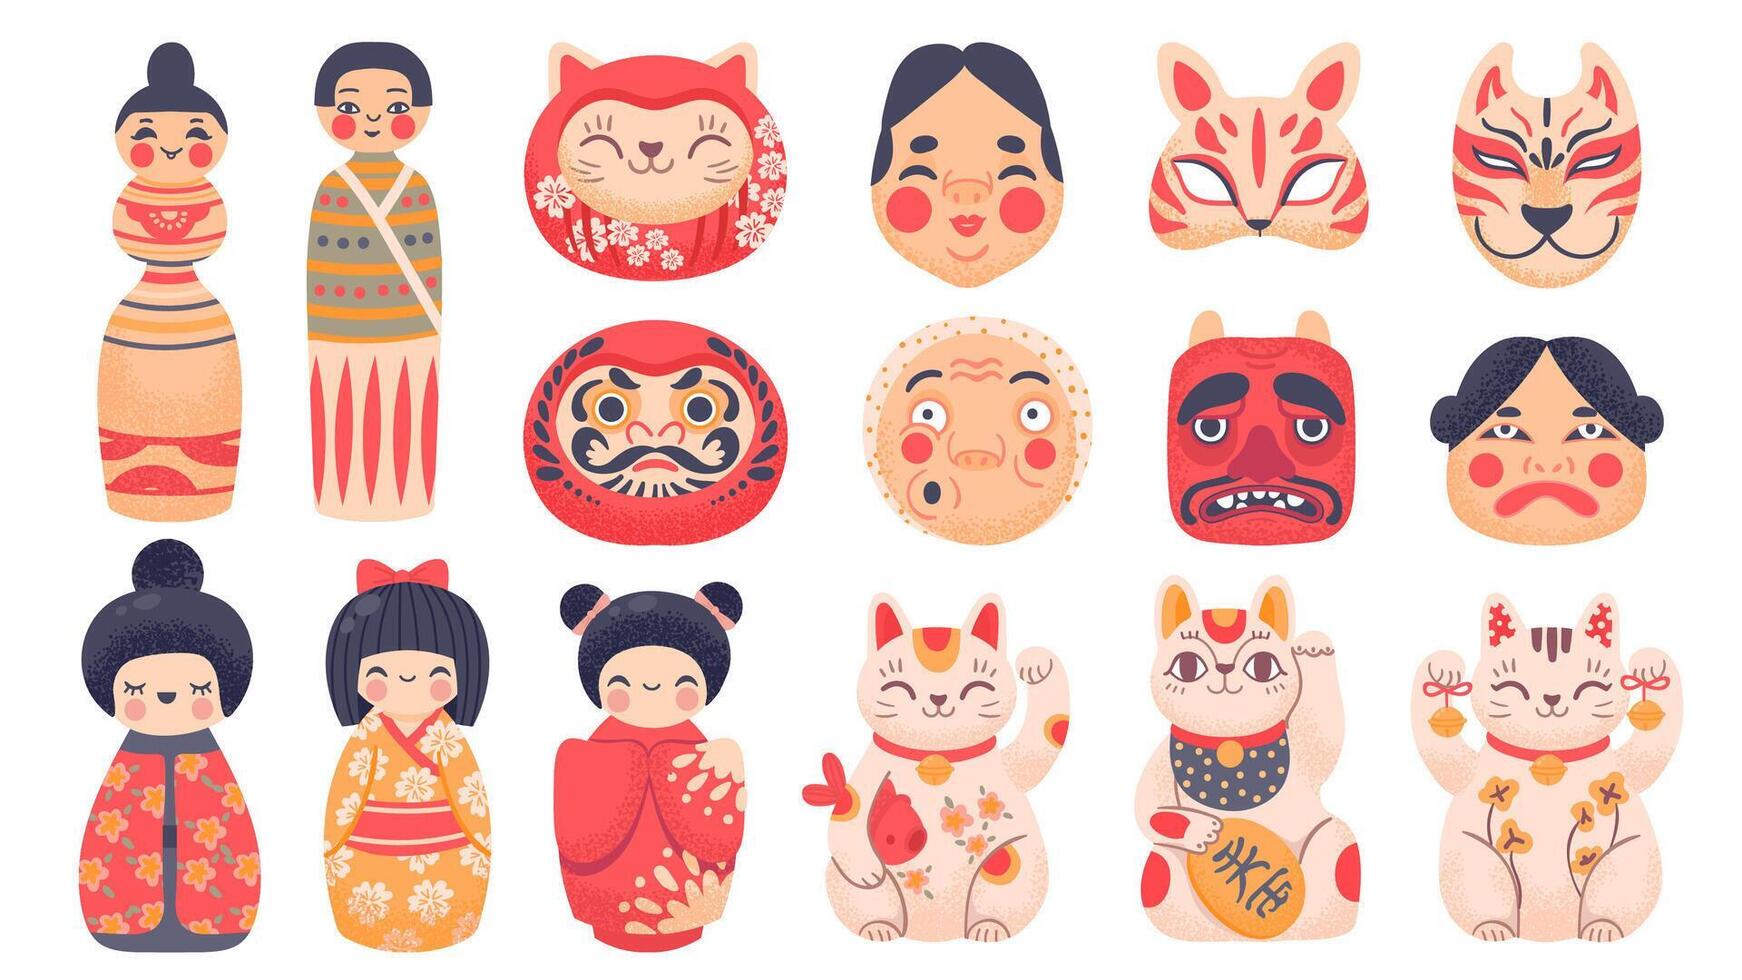 japonés tradicional juguetes daruma, kokeshi muñecas, maneki neko suerte gato y máscara desde Japón. linda dibujos animados asiático cultura símbolos vector conjunto